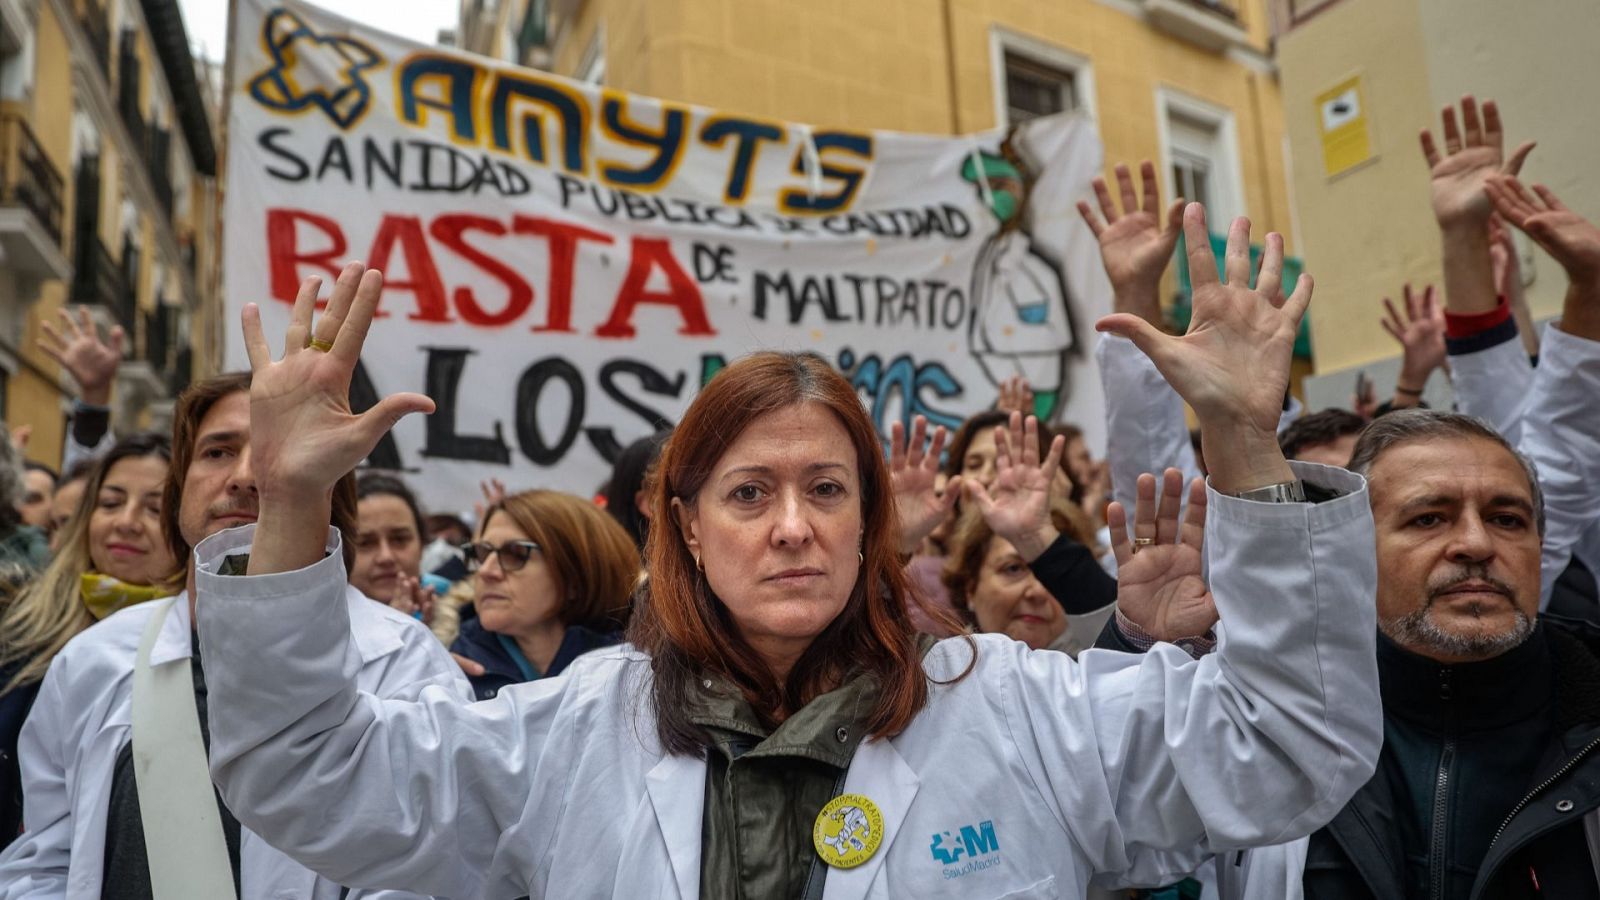 Participantes de la huelga indefinida de médicos de familia y pediatras de la Atención Primaria madrileña. Tienen las manos en alto y atrás una pancarta que dice: "Sanidad pública de calidad. Basta de maltrato"